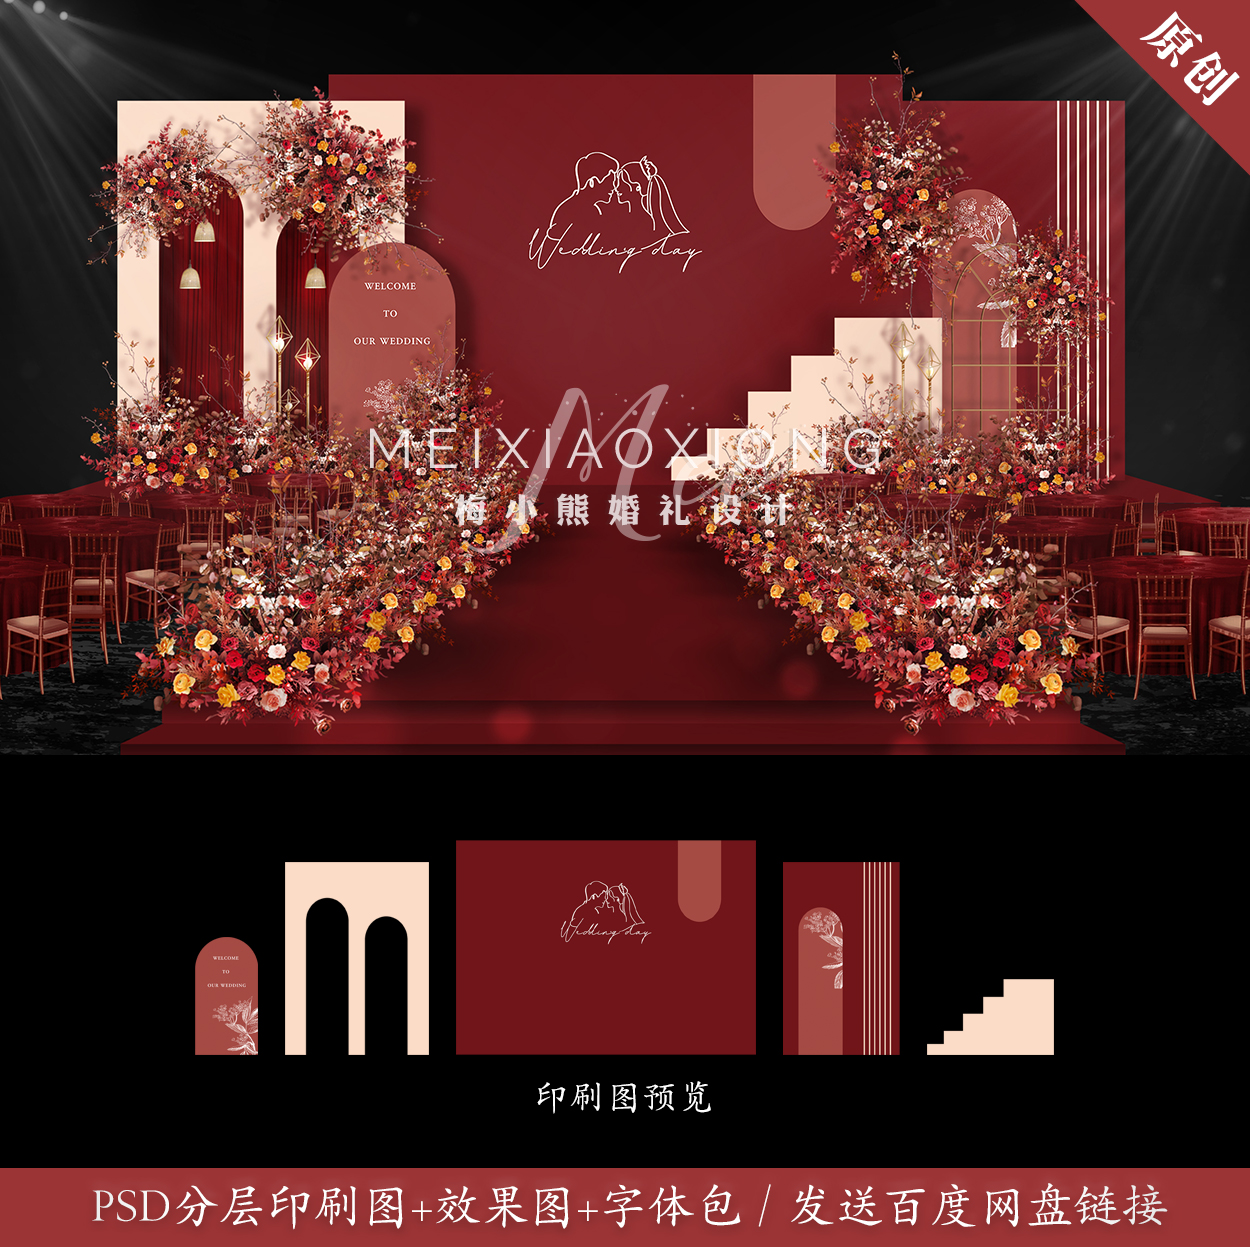 香槟红色婚礼设计效果图 婚庆舞台策划布置背景墙布置PSD素材模板